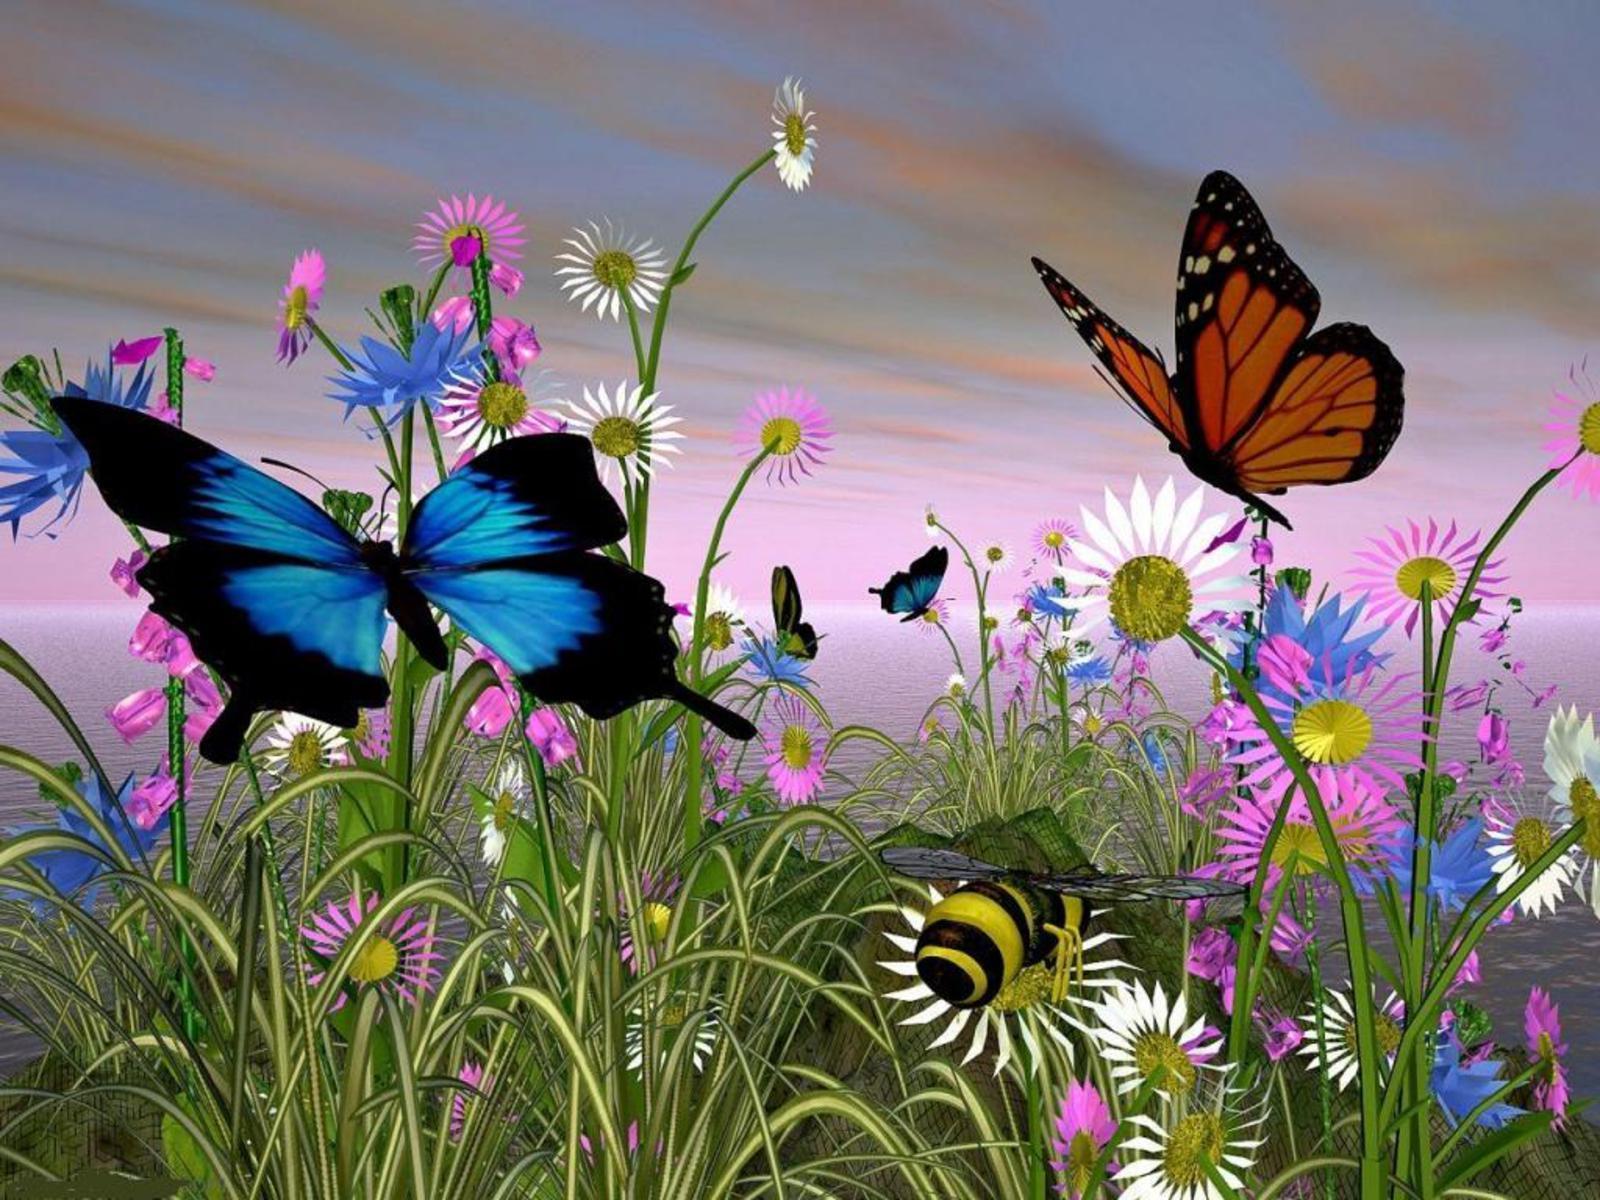 FREE HD PHOTO GALLERY: Butterfly HD Wallpaper